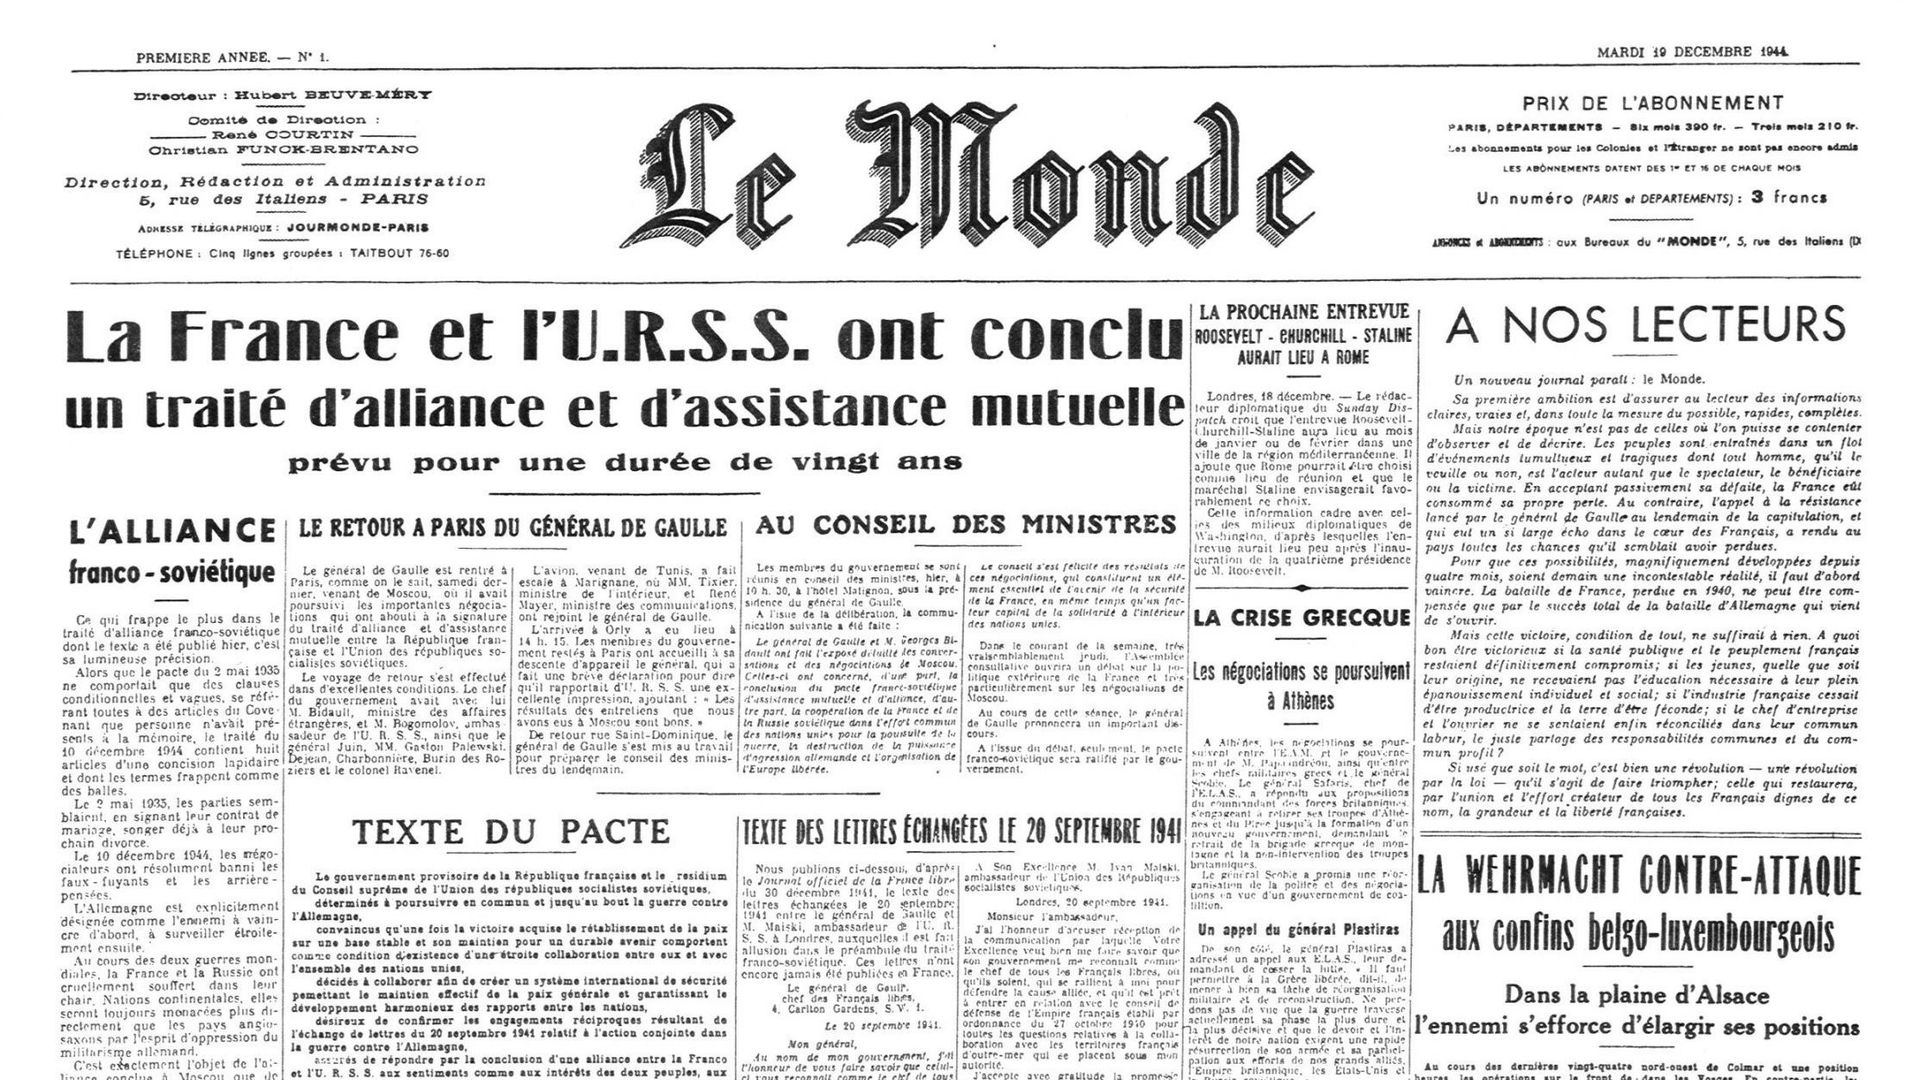 Toute première une du quotidien "Le Monde" daté du 19 décembre 1944